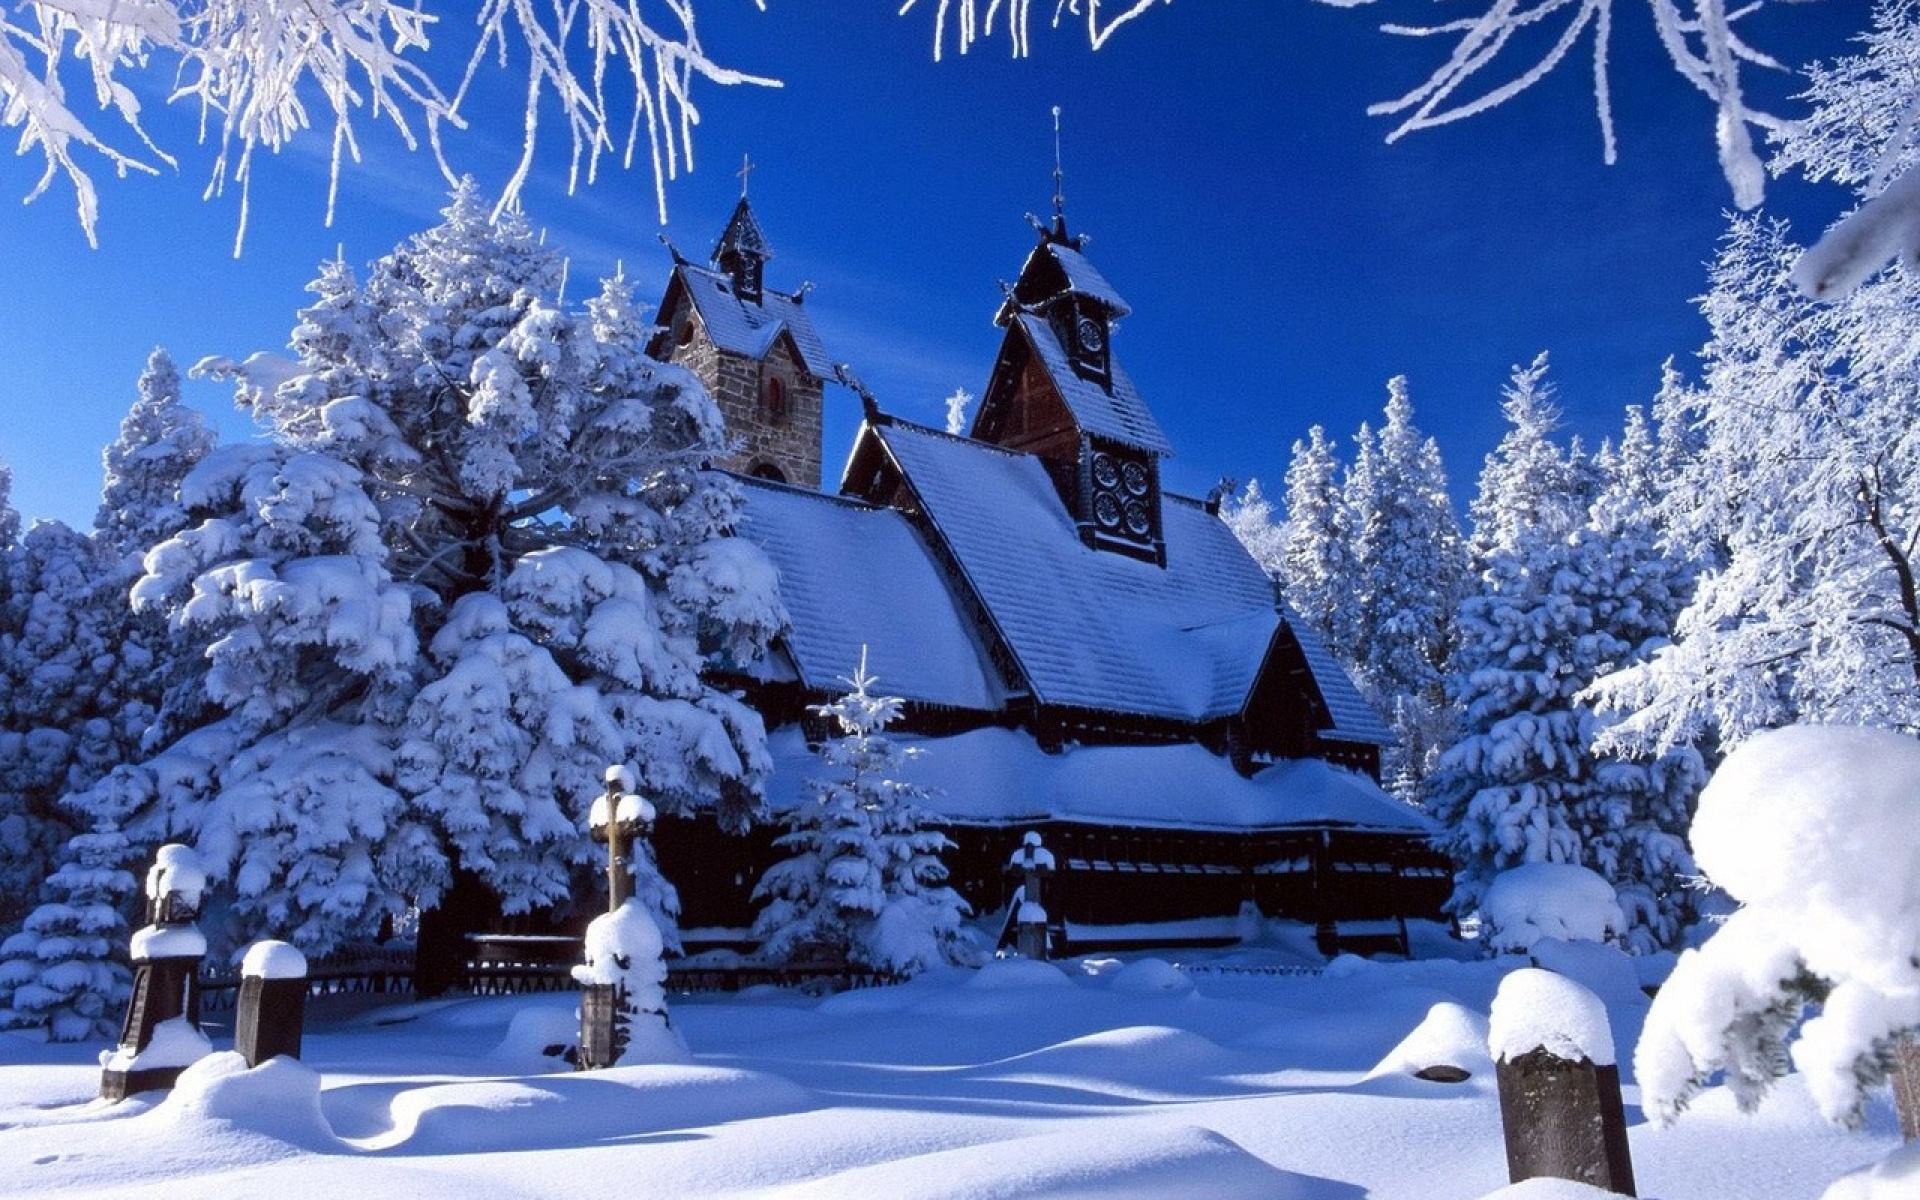 Картинки Дом, дерево, деревья, снег, зима фото и обои на рабочий стол